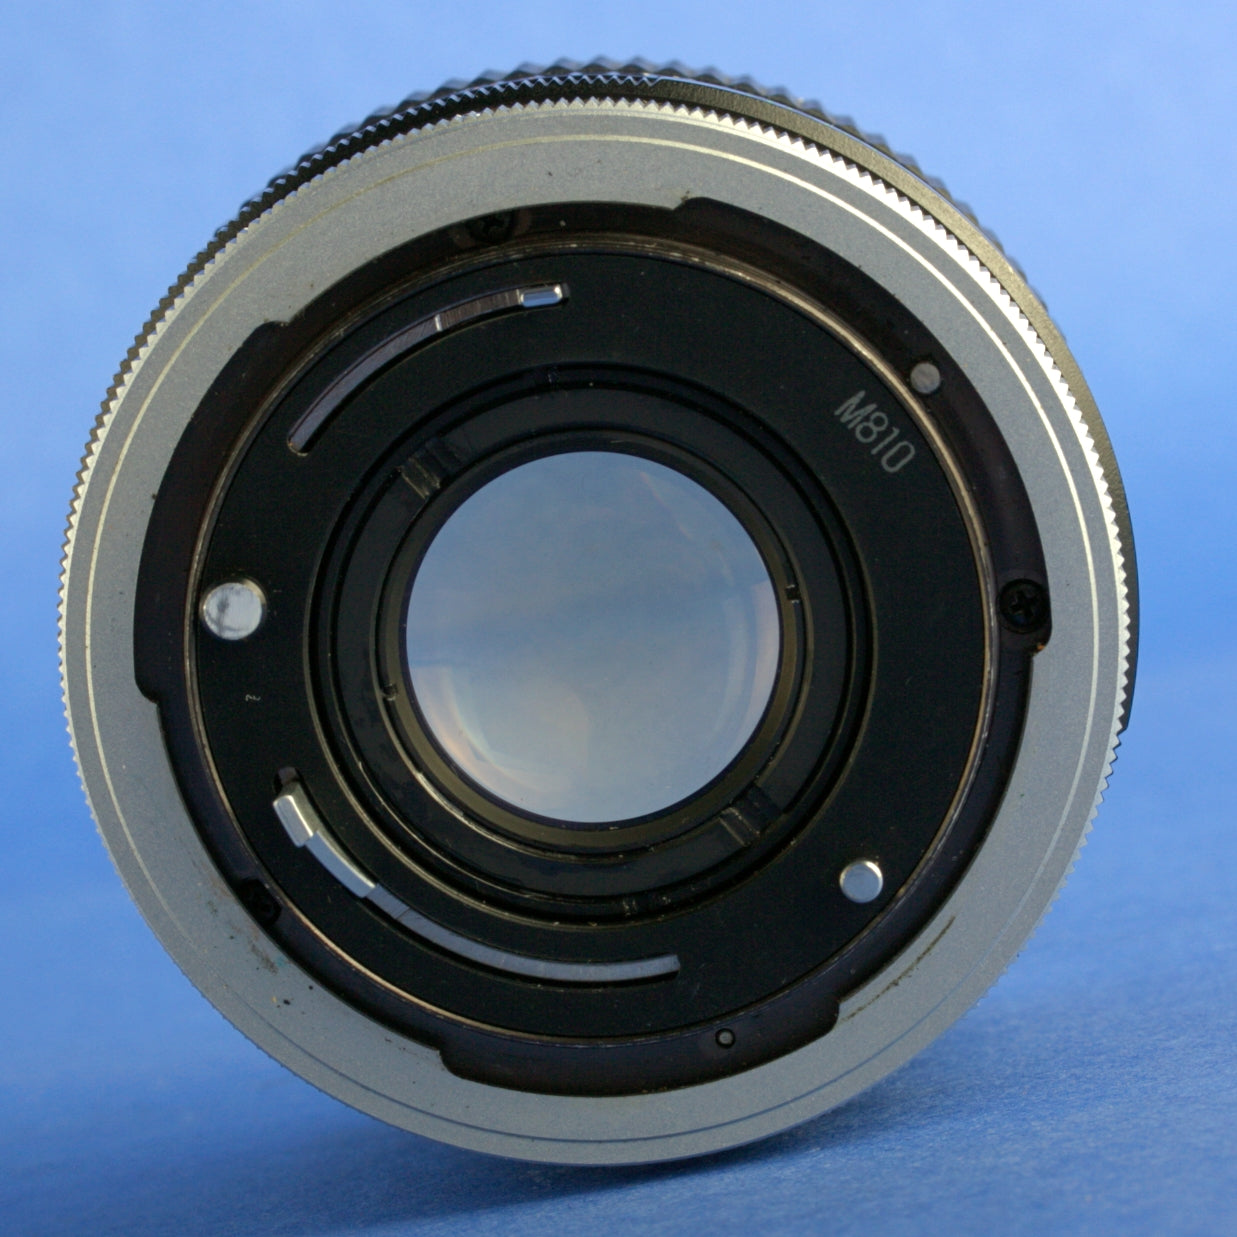 Canon FD 35mm F2 Concave "O" Chrome Nose Lens